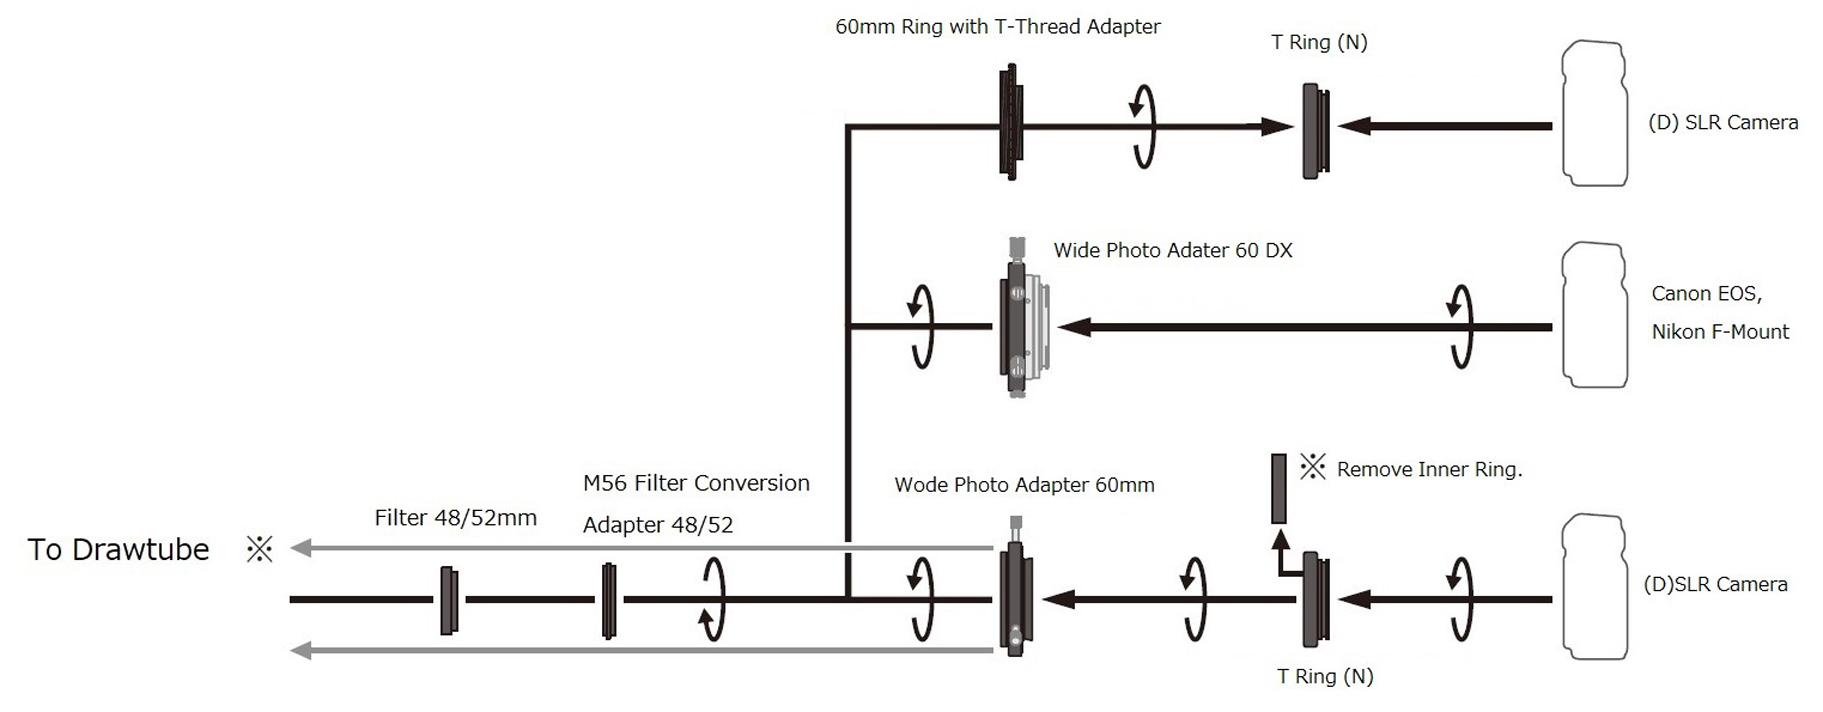 Adattatore filtro Vixen M56 per filettature filtro M48 mm e M52 mm